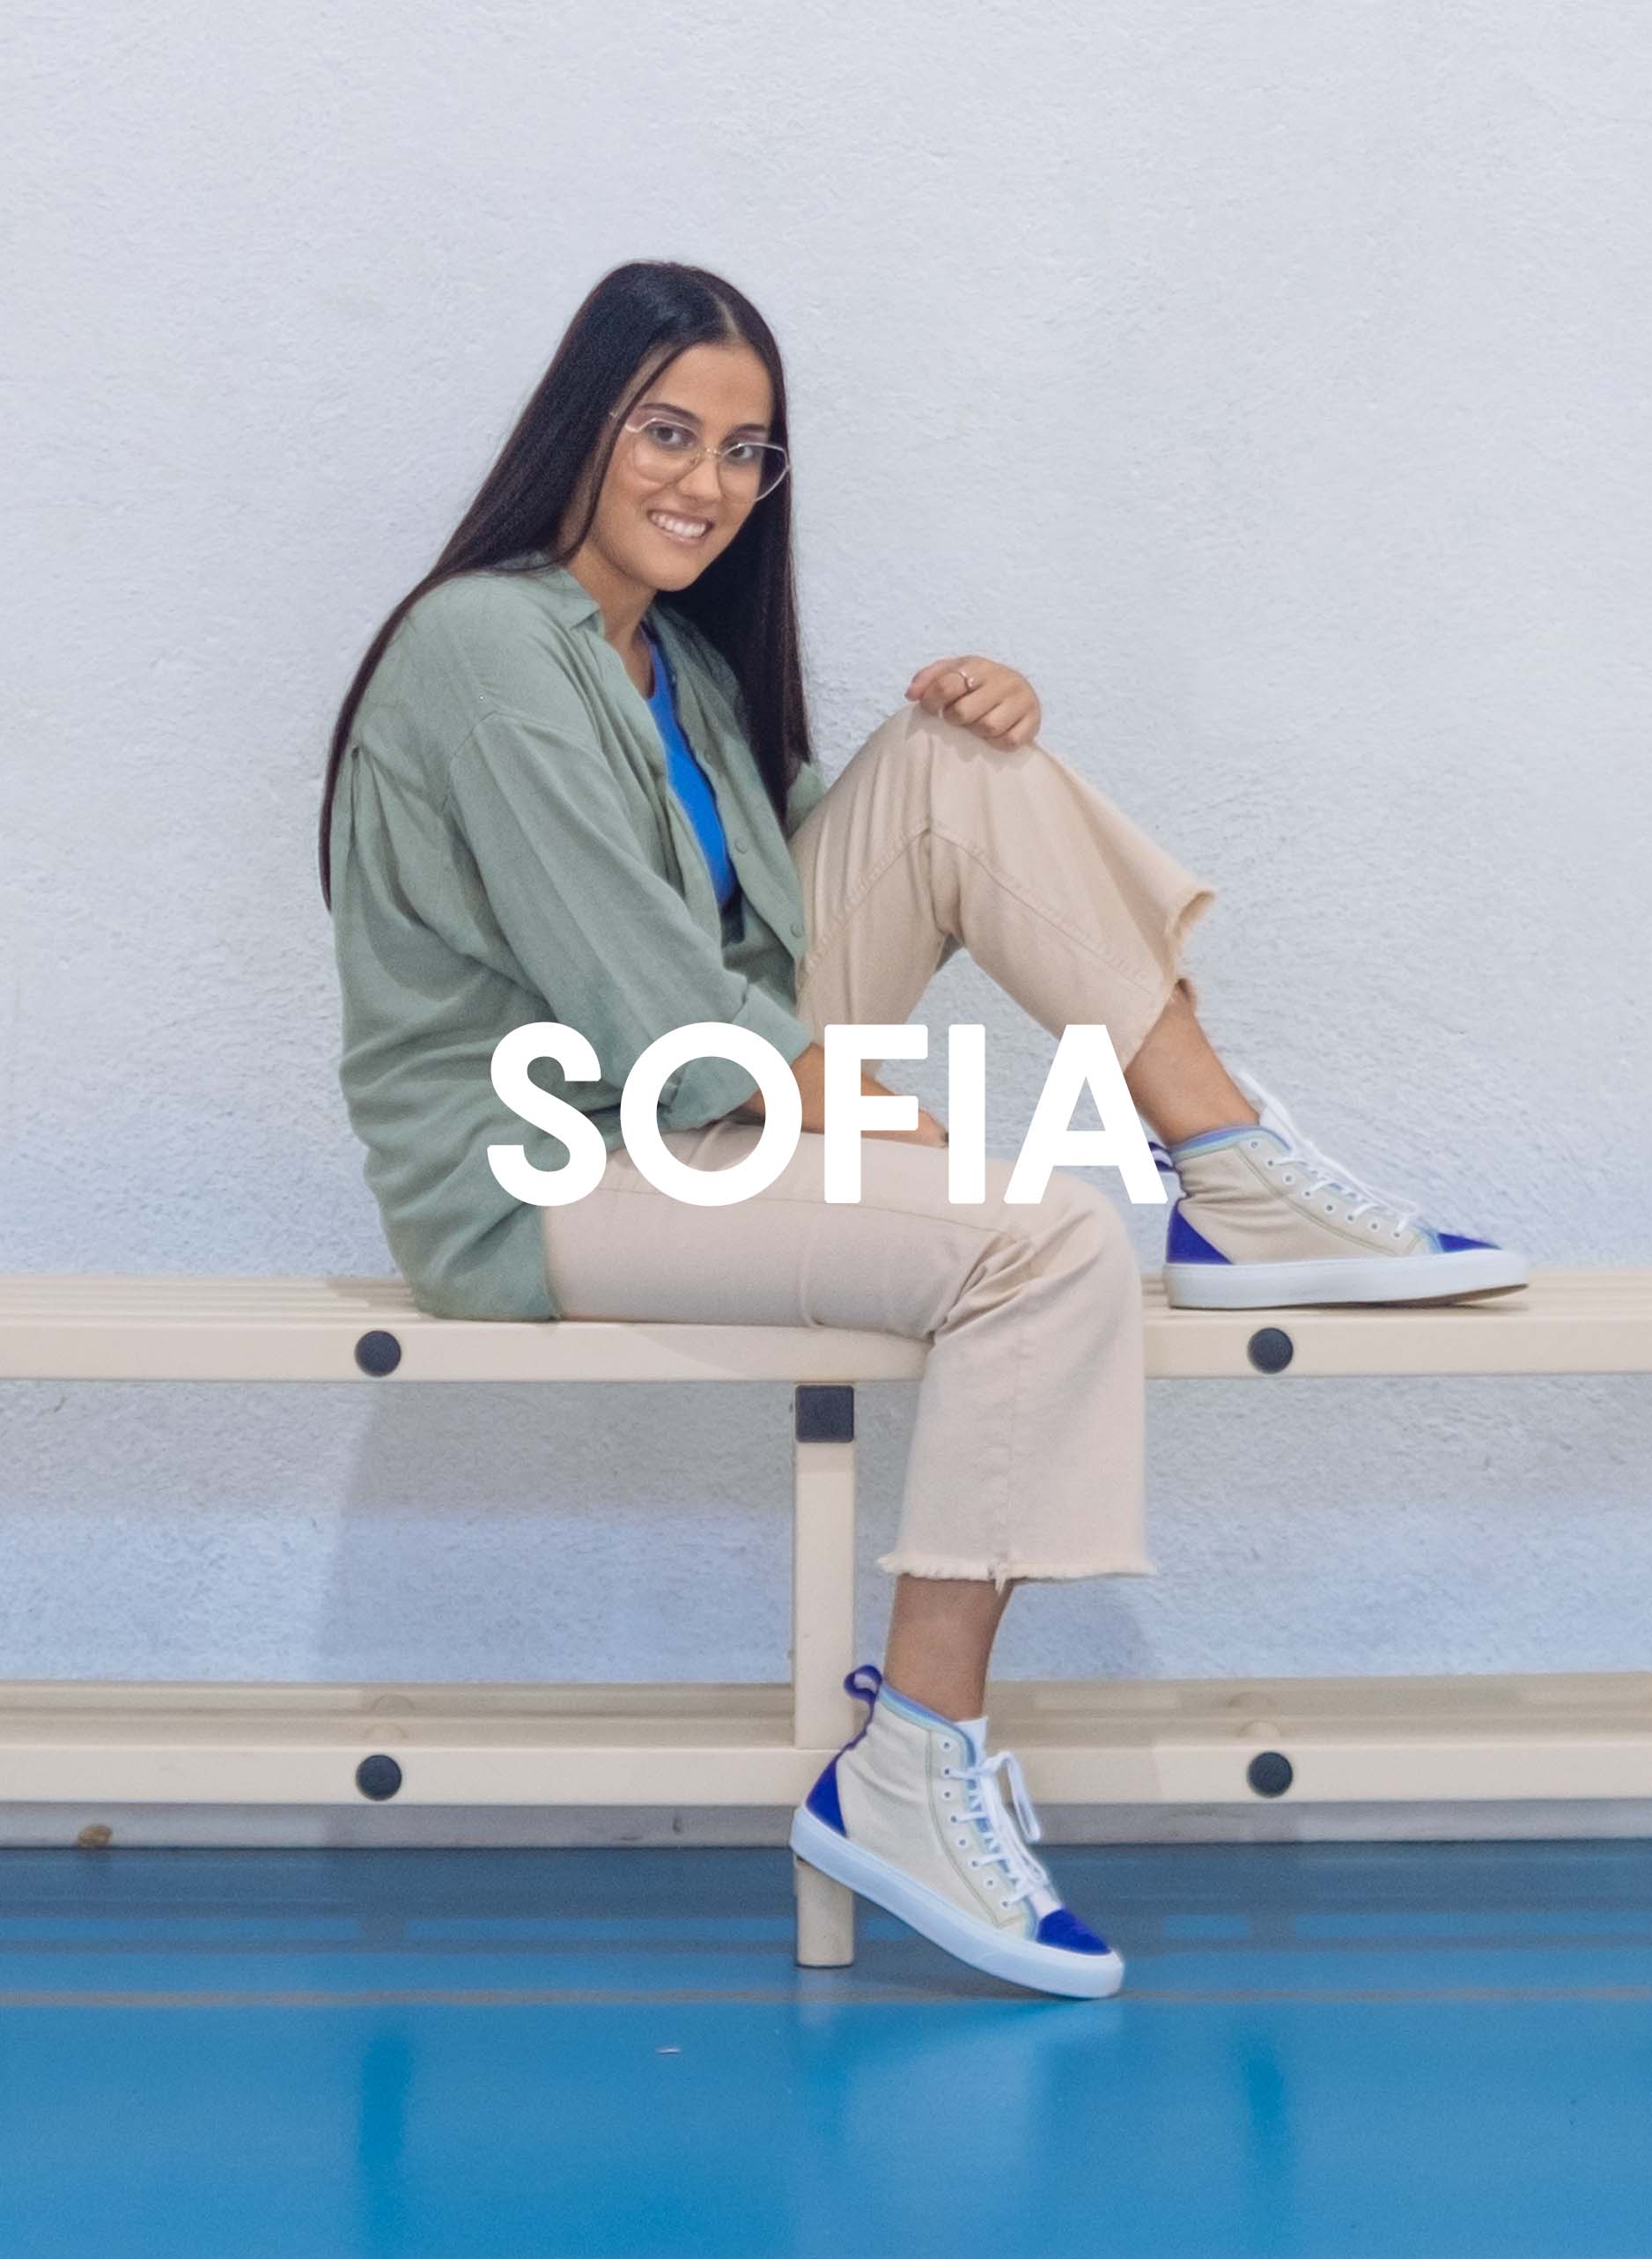 Sofia, vêtue d’une chemise verte et d’un pantalon beige, assise sur un banc avec Diverge sneakers, promouvant l’impact social et les chaussures personnalisées à travers le projet Imagine.